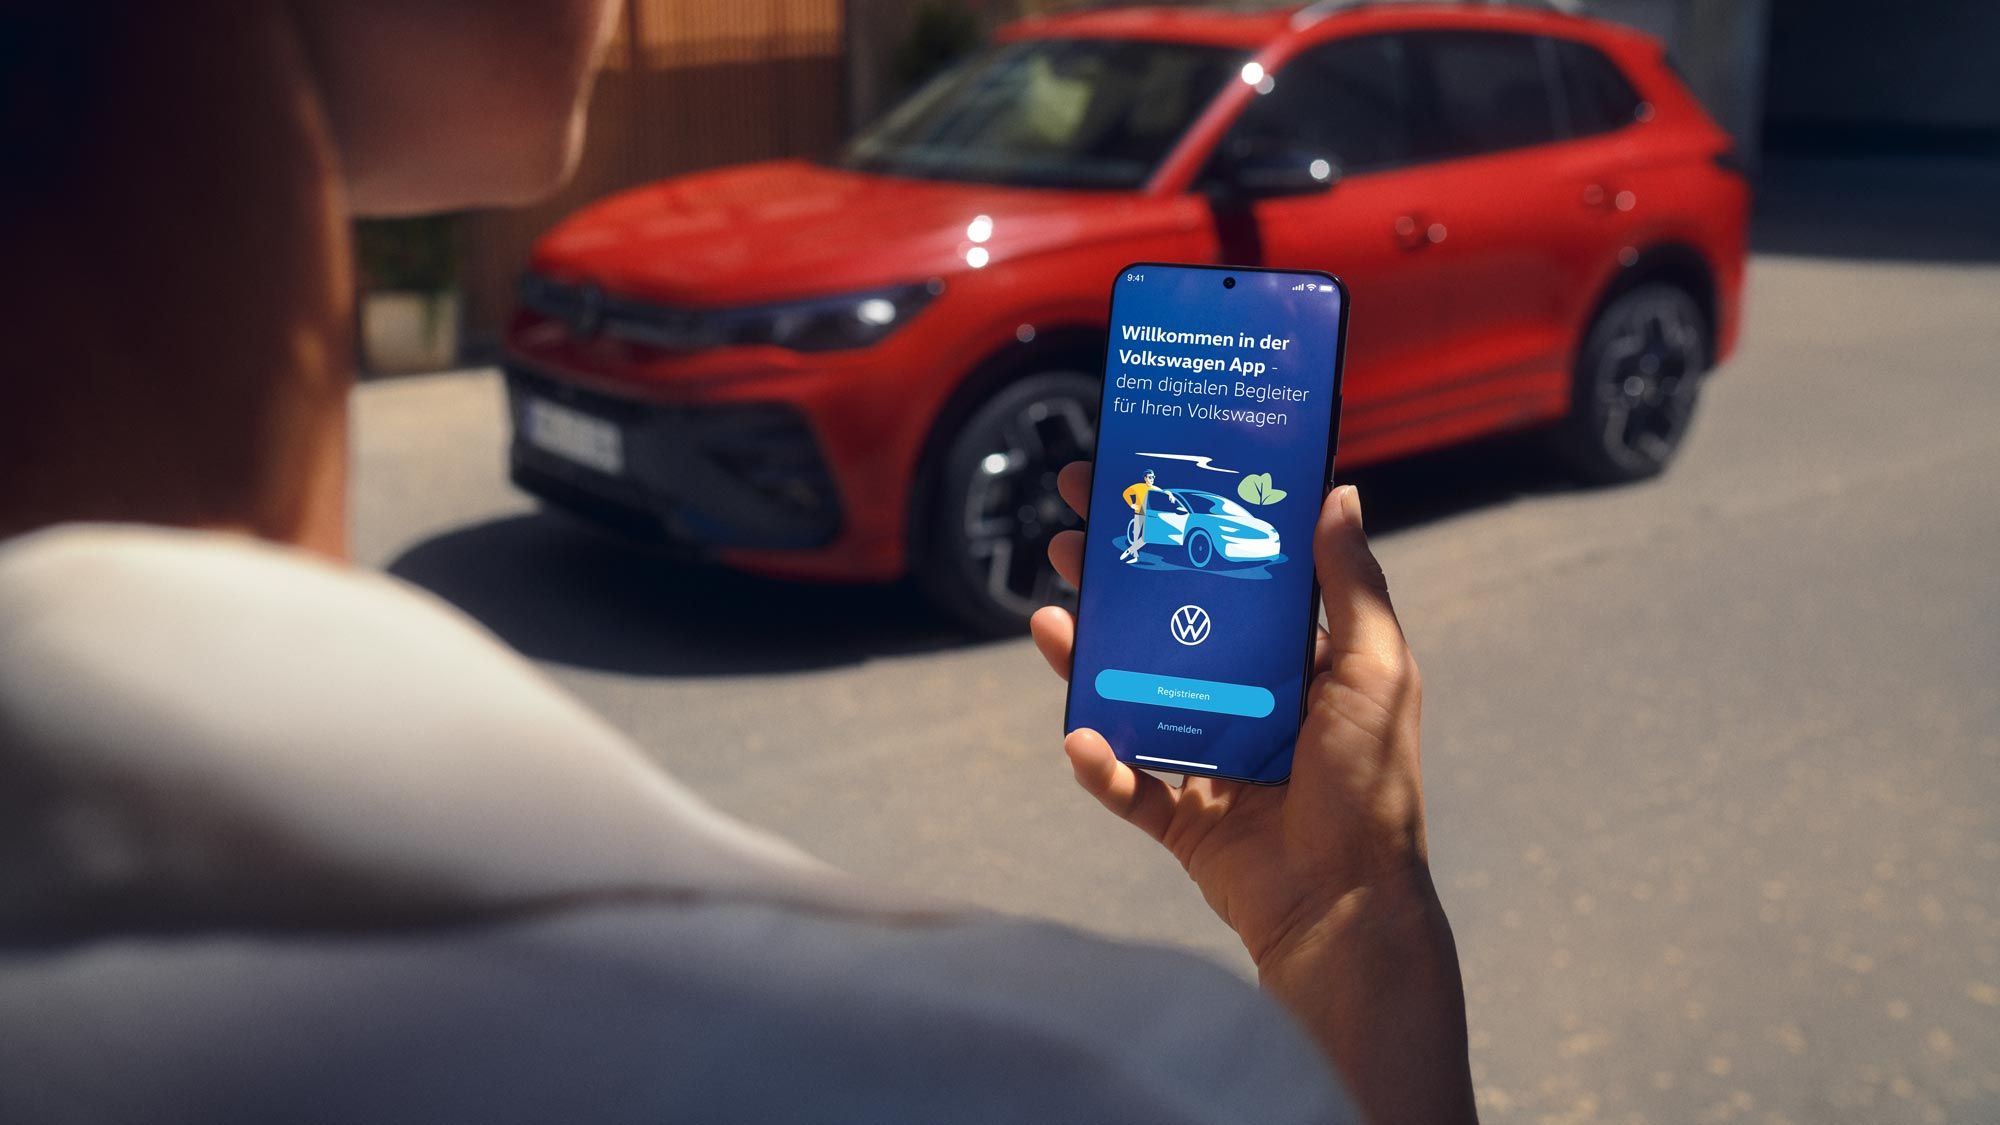 Blick auf ein Handydisplay mit Fahrzeugdaten des Tiguan, im Hintergrund ein seitlich geparkter VW Tiguan in rot